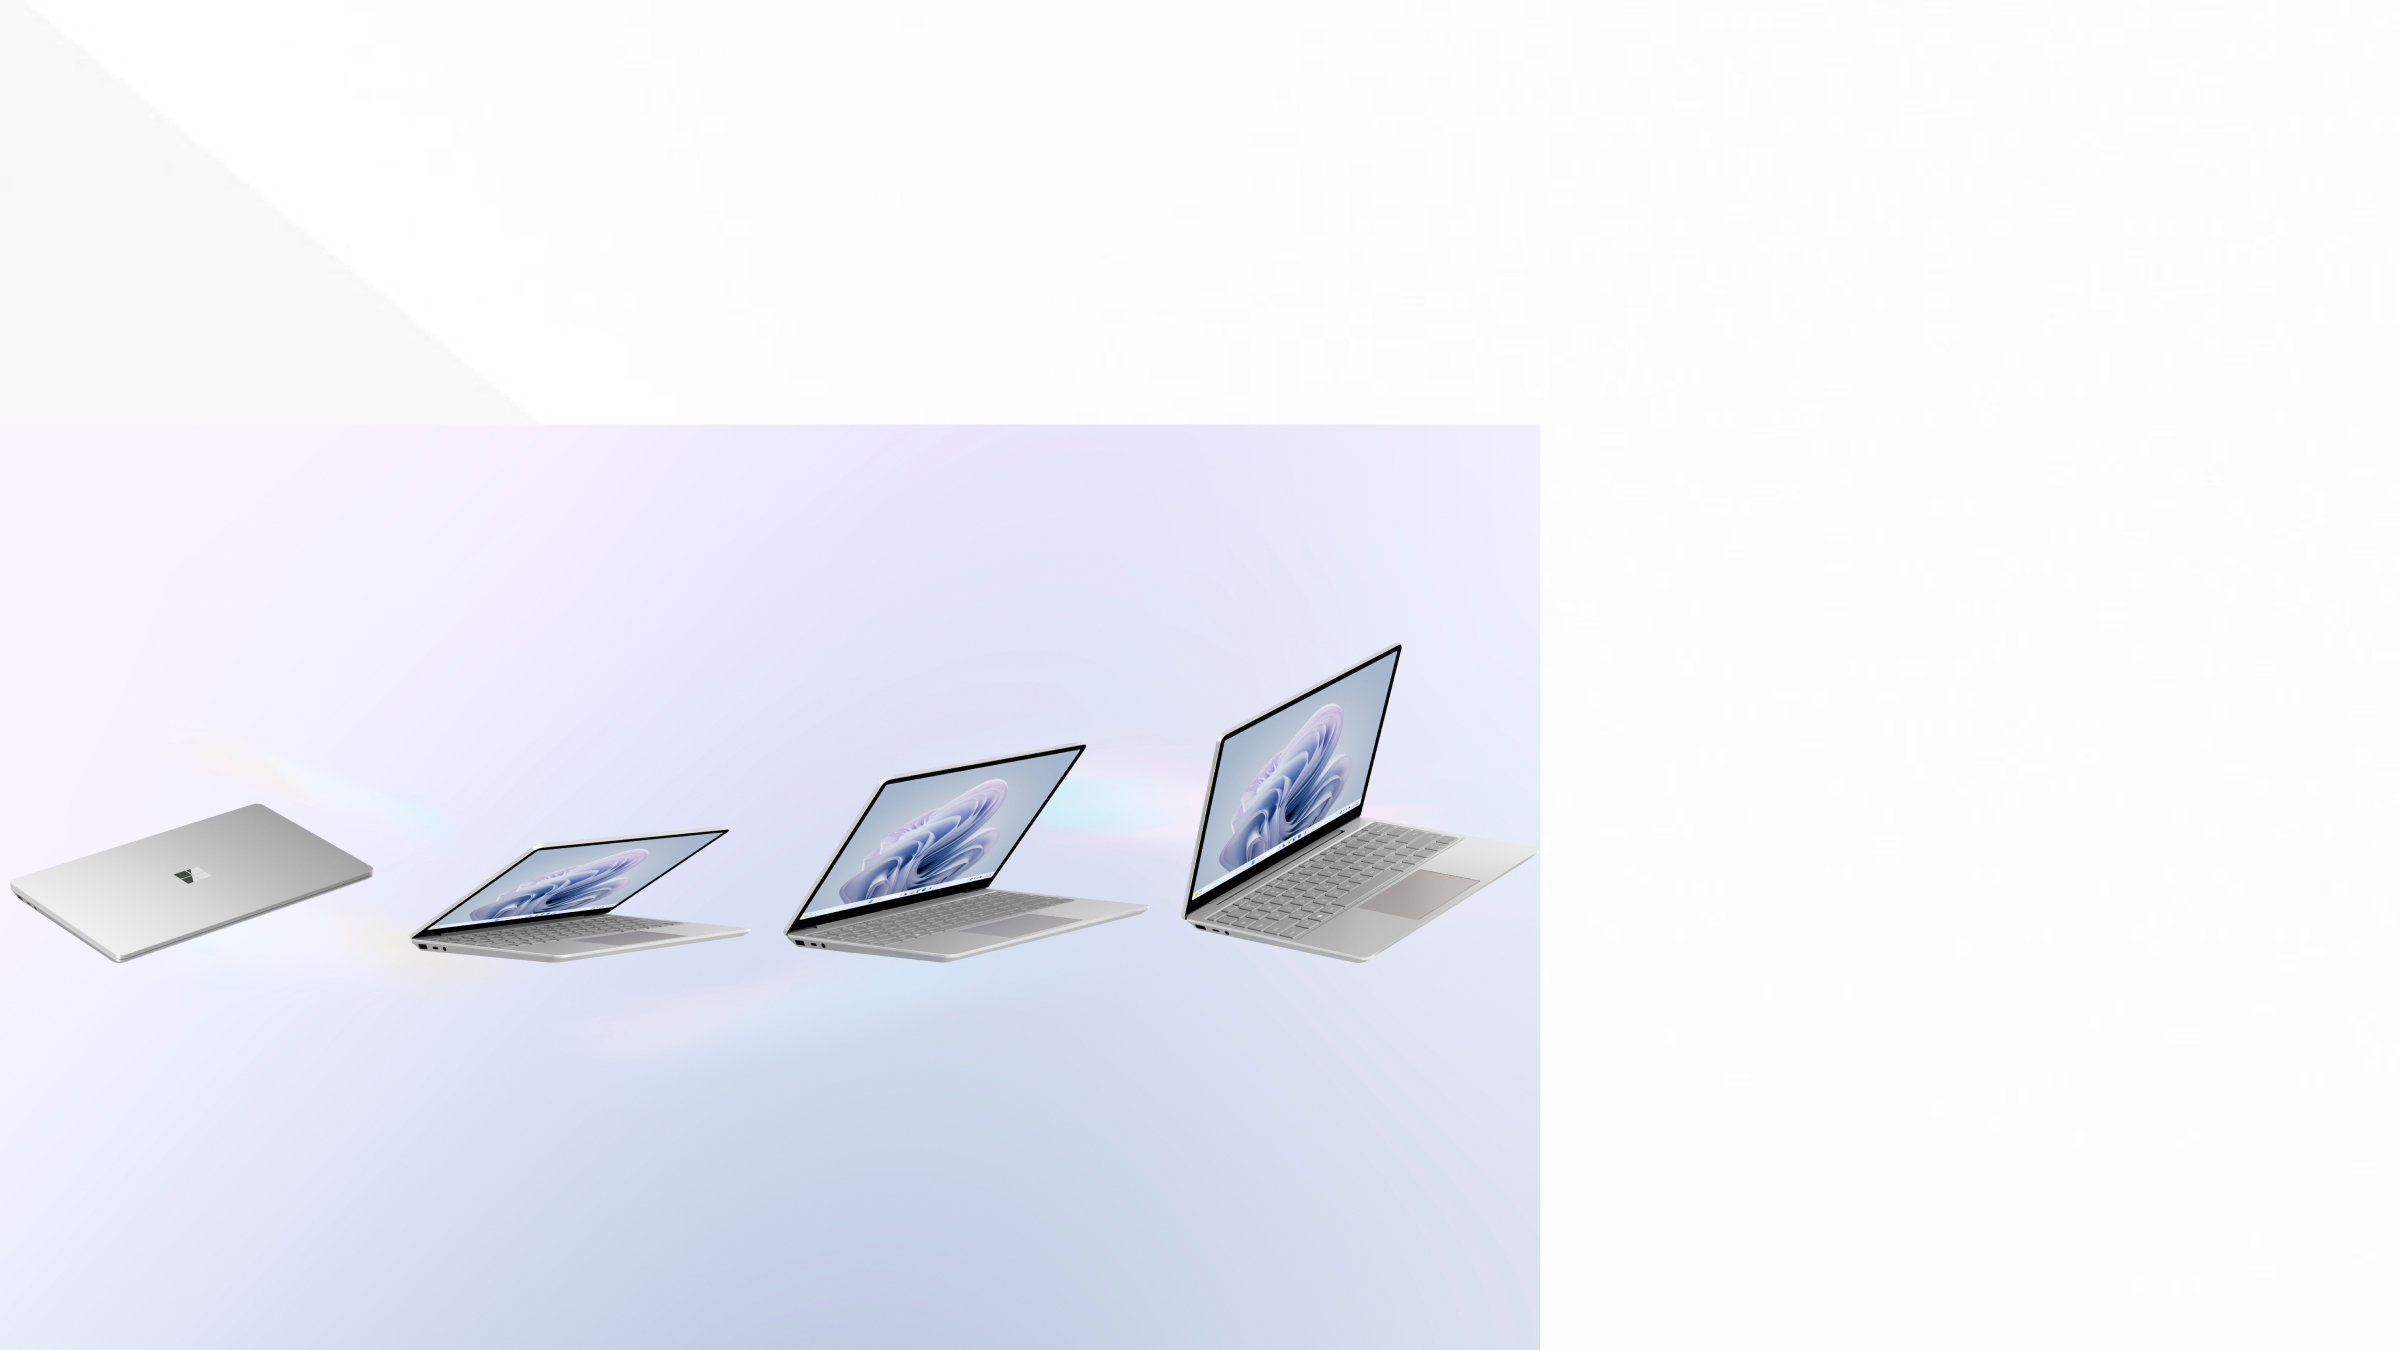 Fermo immagine dal video di Surface Laptop Go 3: da sinistra a destra, un modello nel colore Platino chiuso, uno nel colore Salvia che si apre in modalità Laptop, uno nel colore Sabbia aperto a metà in modalità Laptop e uno nel colore Blu ghiaccio aperto quasi completamente in modalità Laptop.